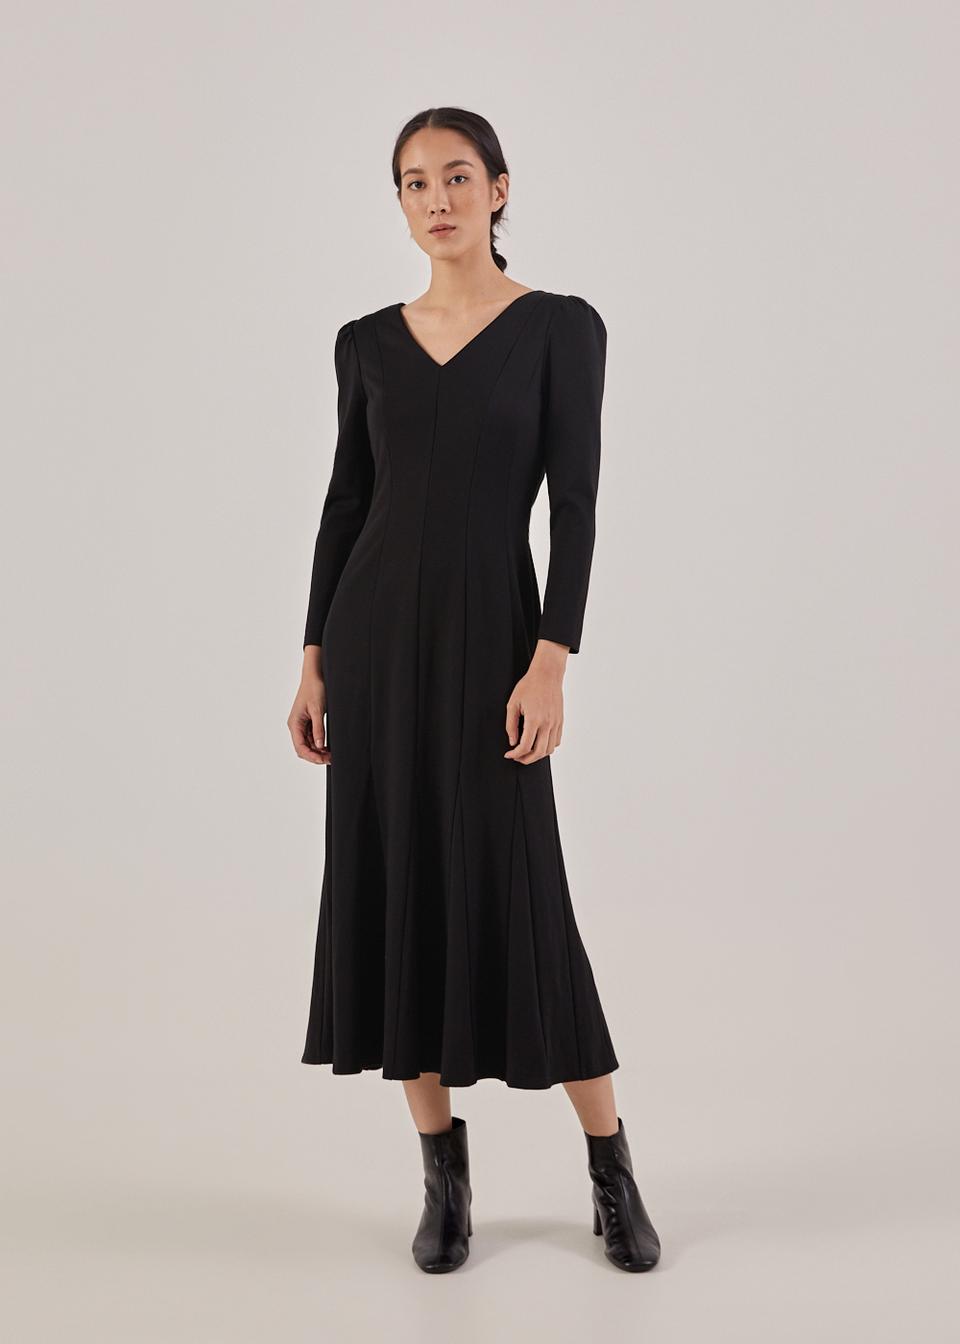 Buy Jovene Godet Panel Maxi Dress @ Love, Bonito Singapore | Shop Women ...